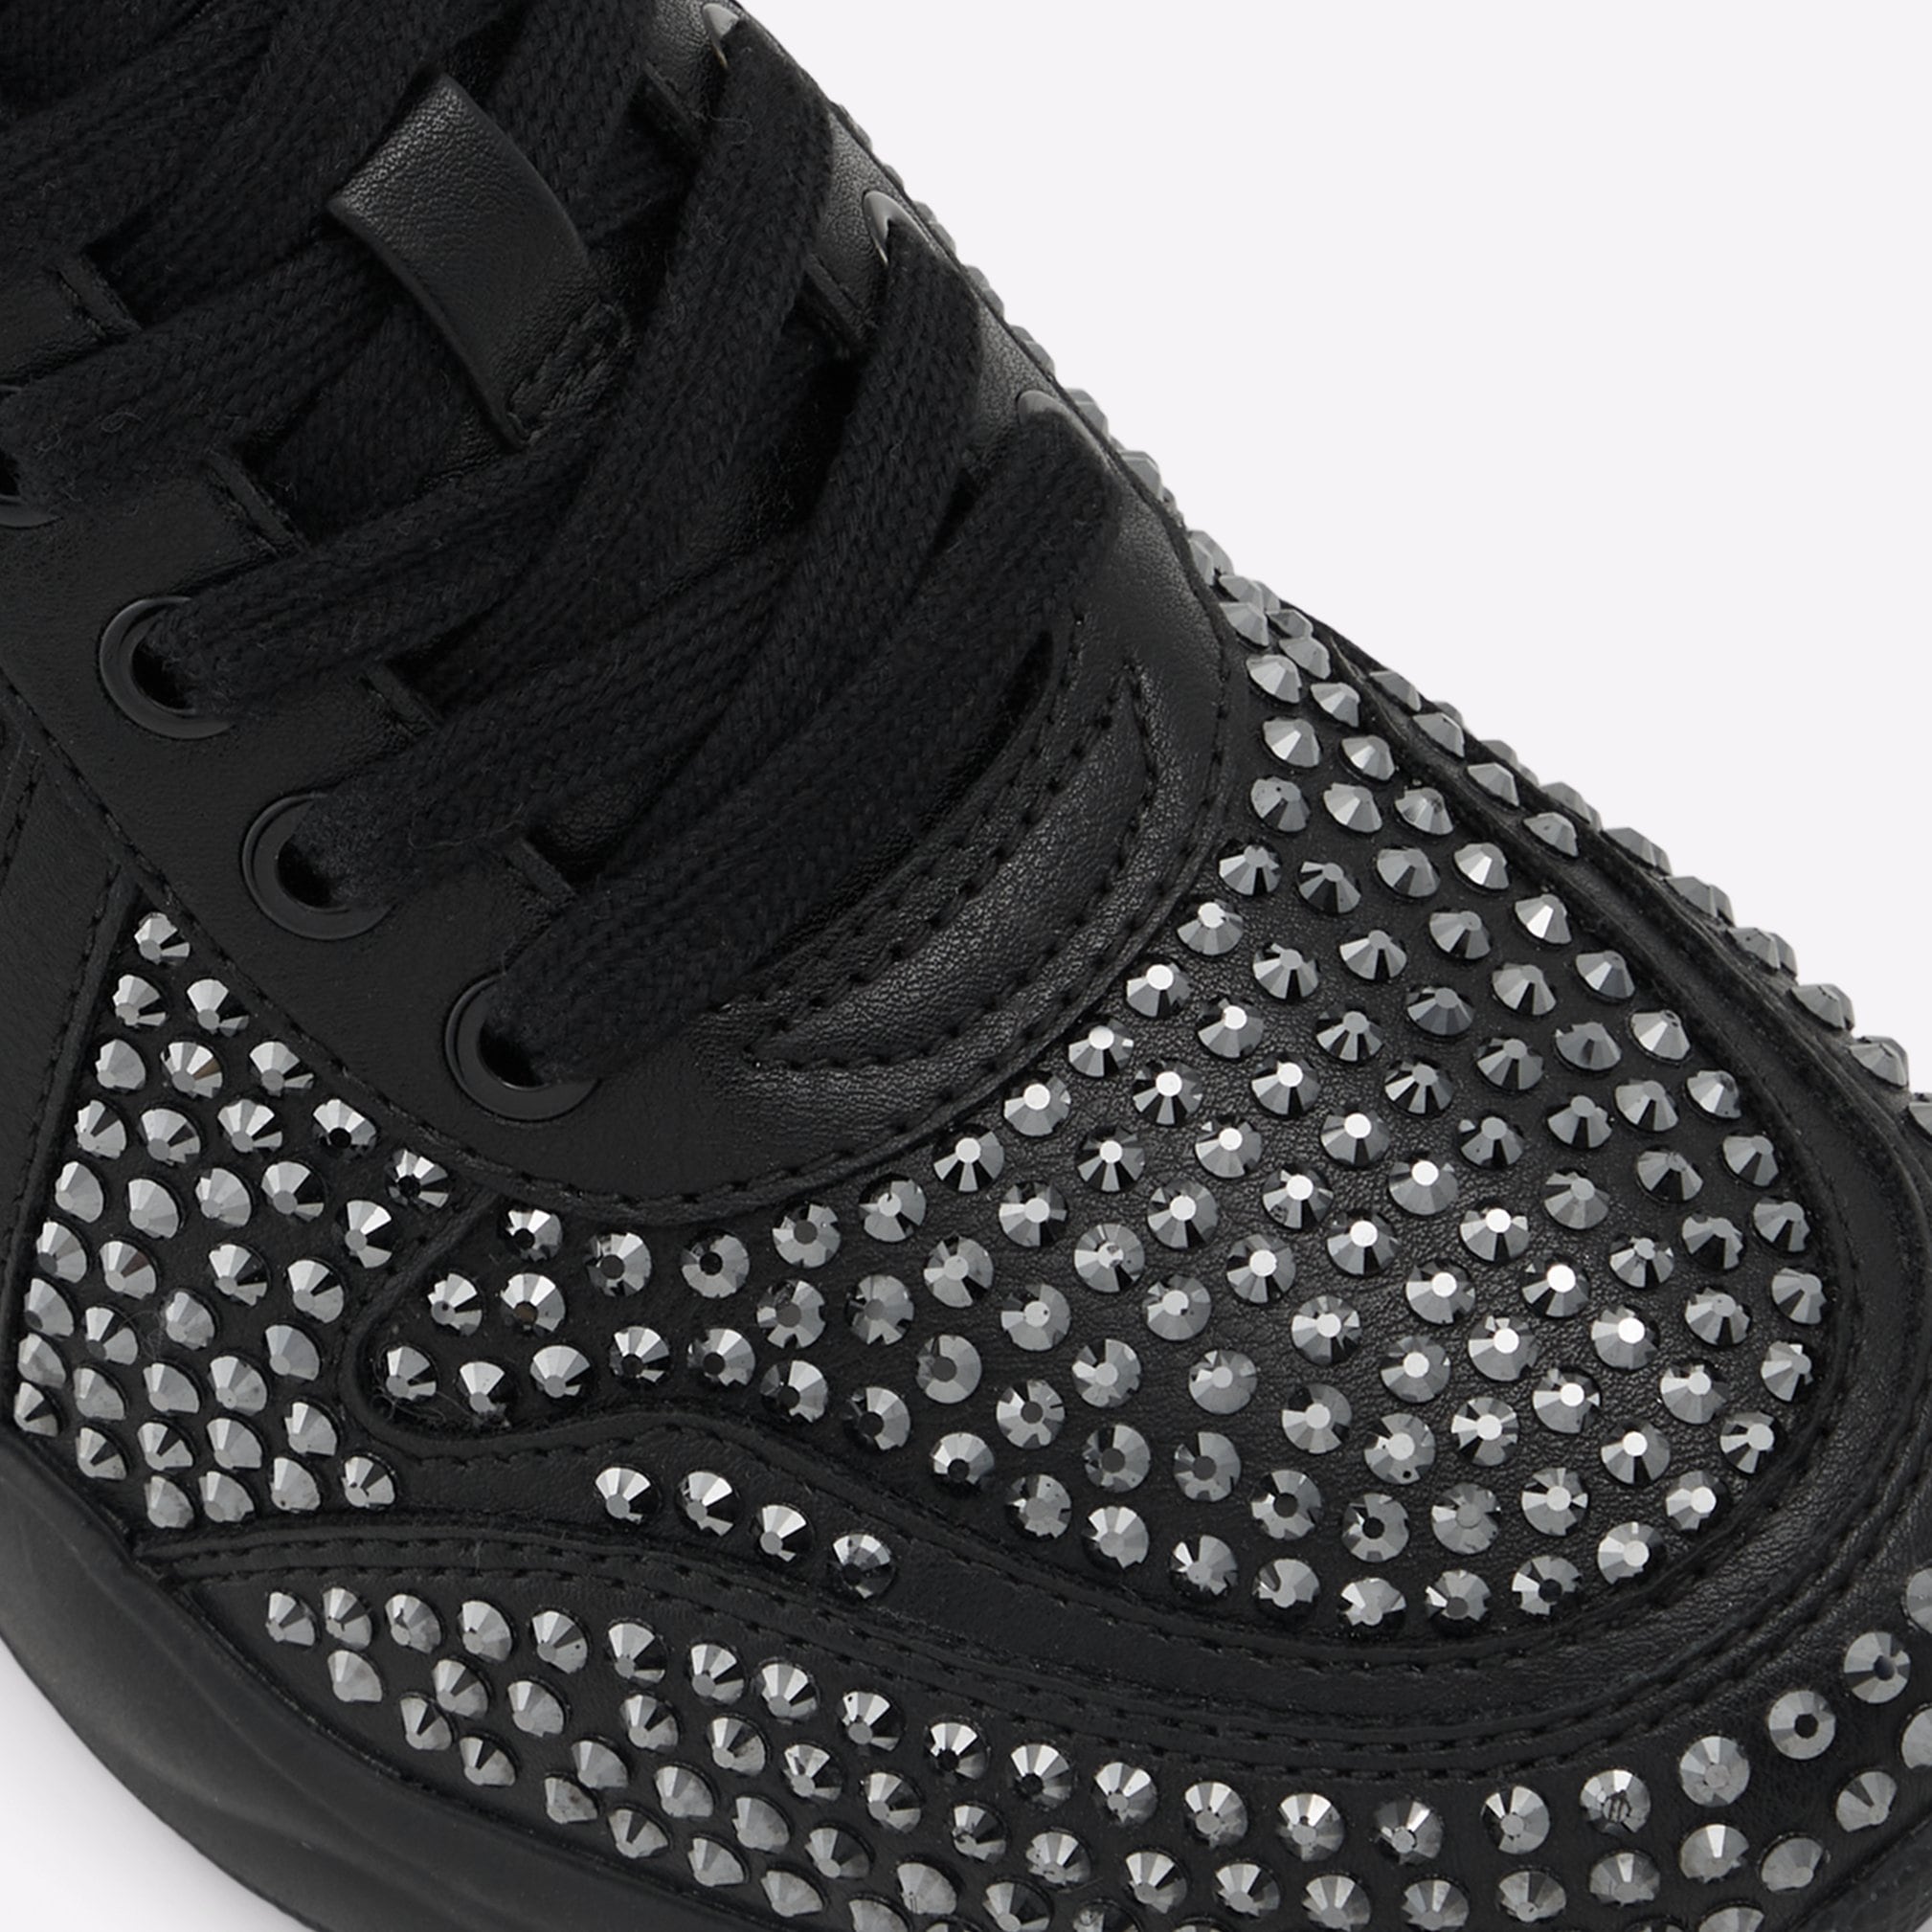 Glow Women Shoes - Black - ALDO KSA